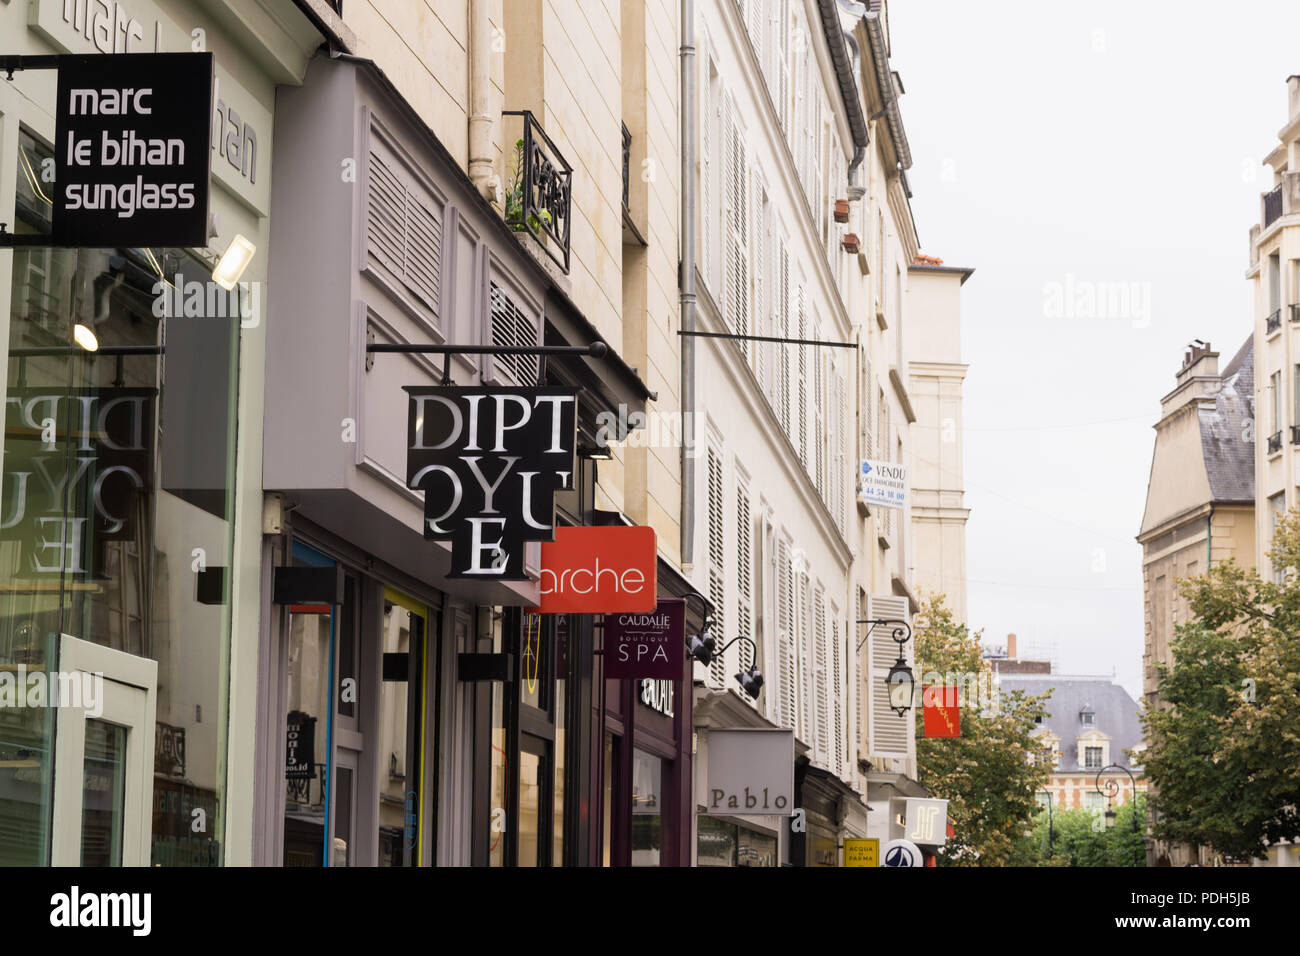 Paris Diptyque store - Shops in the Marais district of Paris, France, Europe. Stock Photo